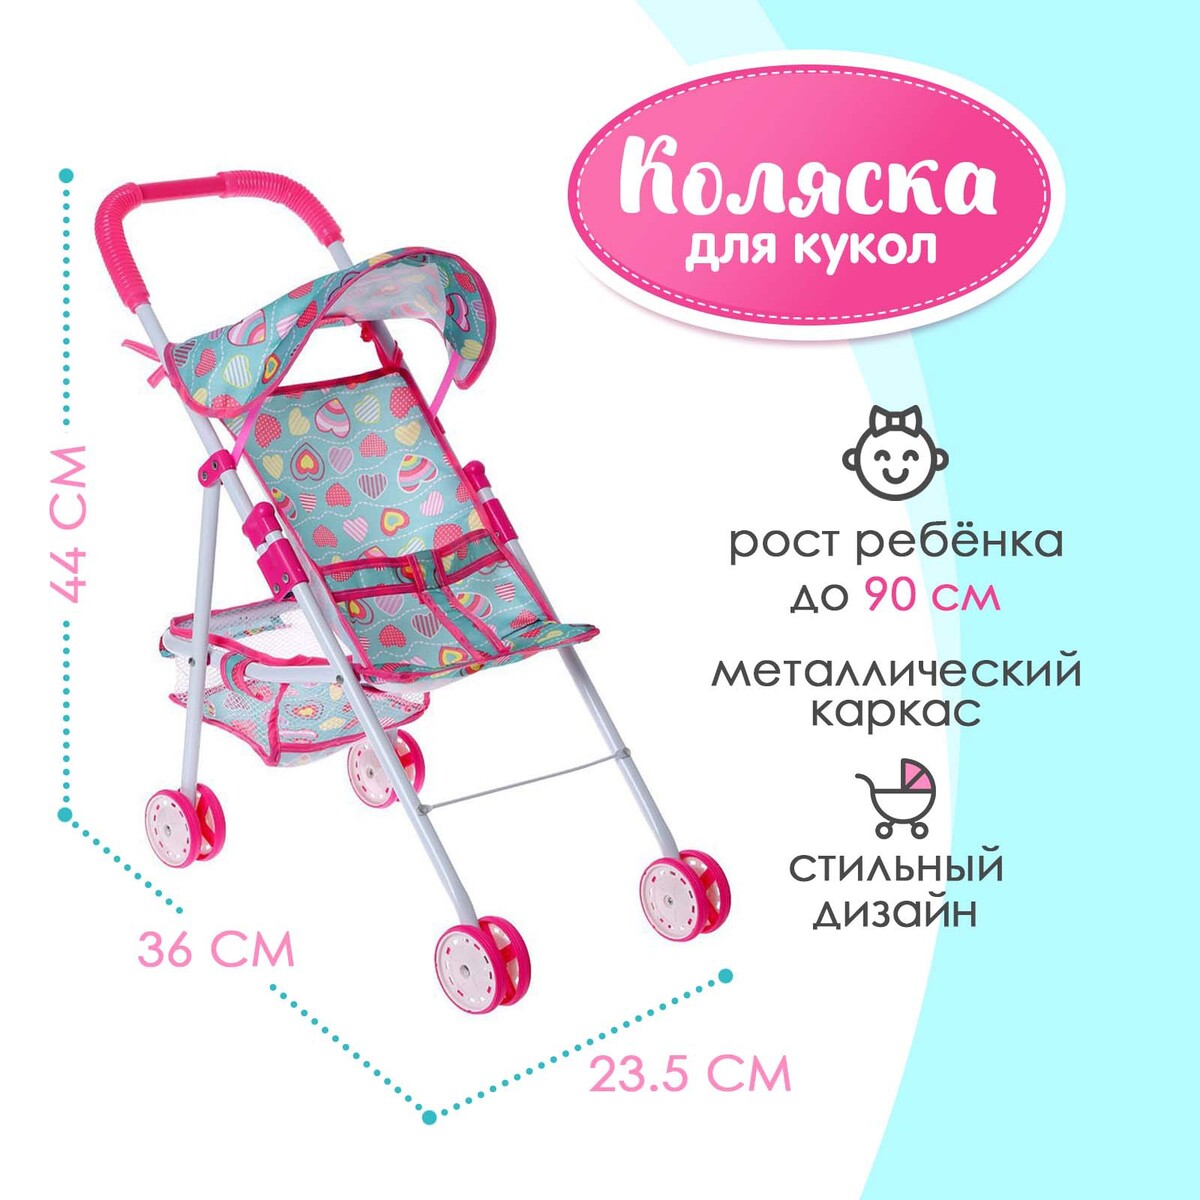 Коляска для кукол, летняя, металлический каркас коляска для кукол универсальная с корзиной металлический каркас розовый